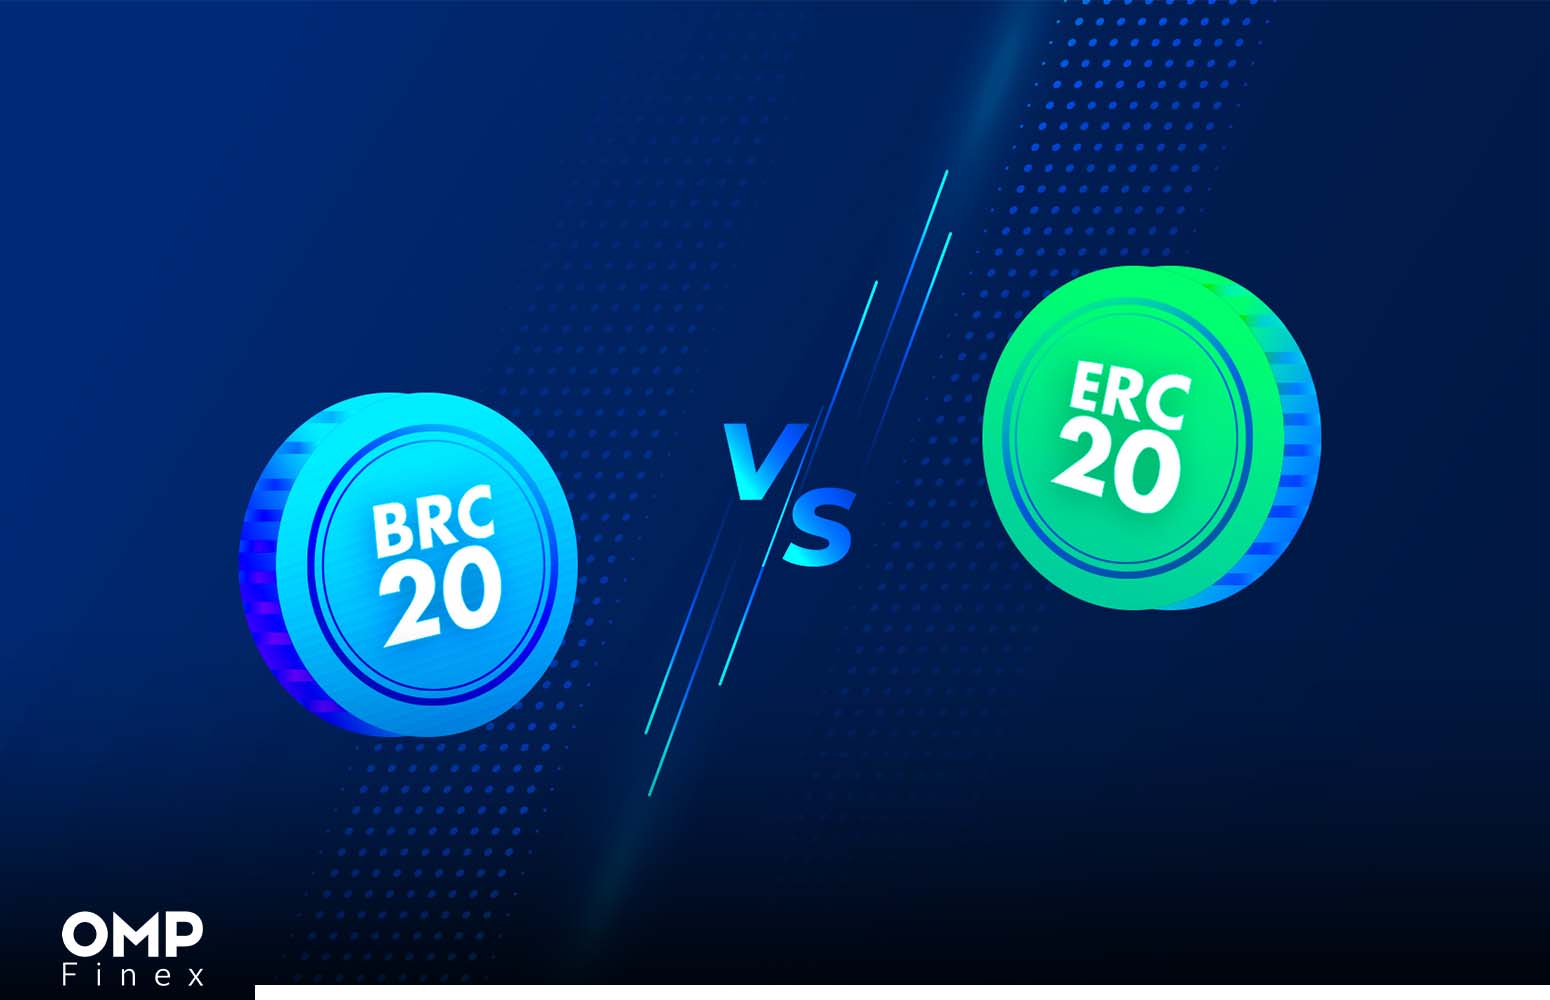 مقایسه استاندارد توکن BRC-20 با ERC-20